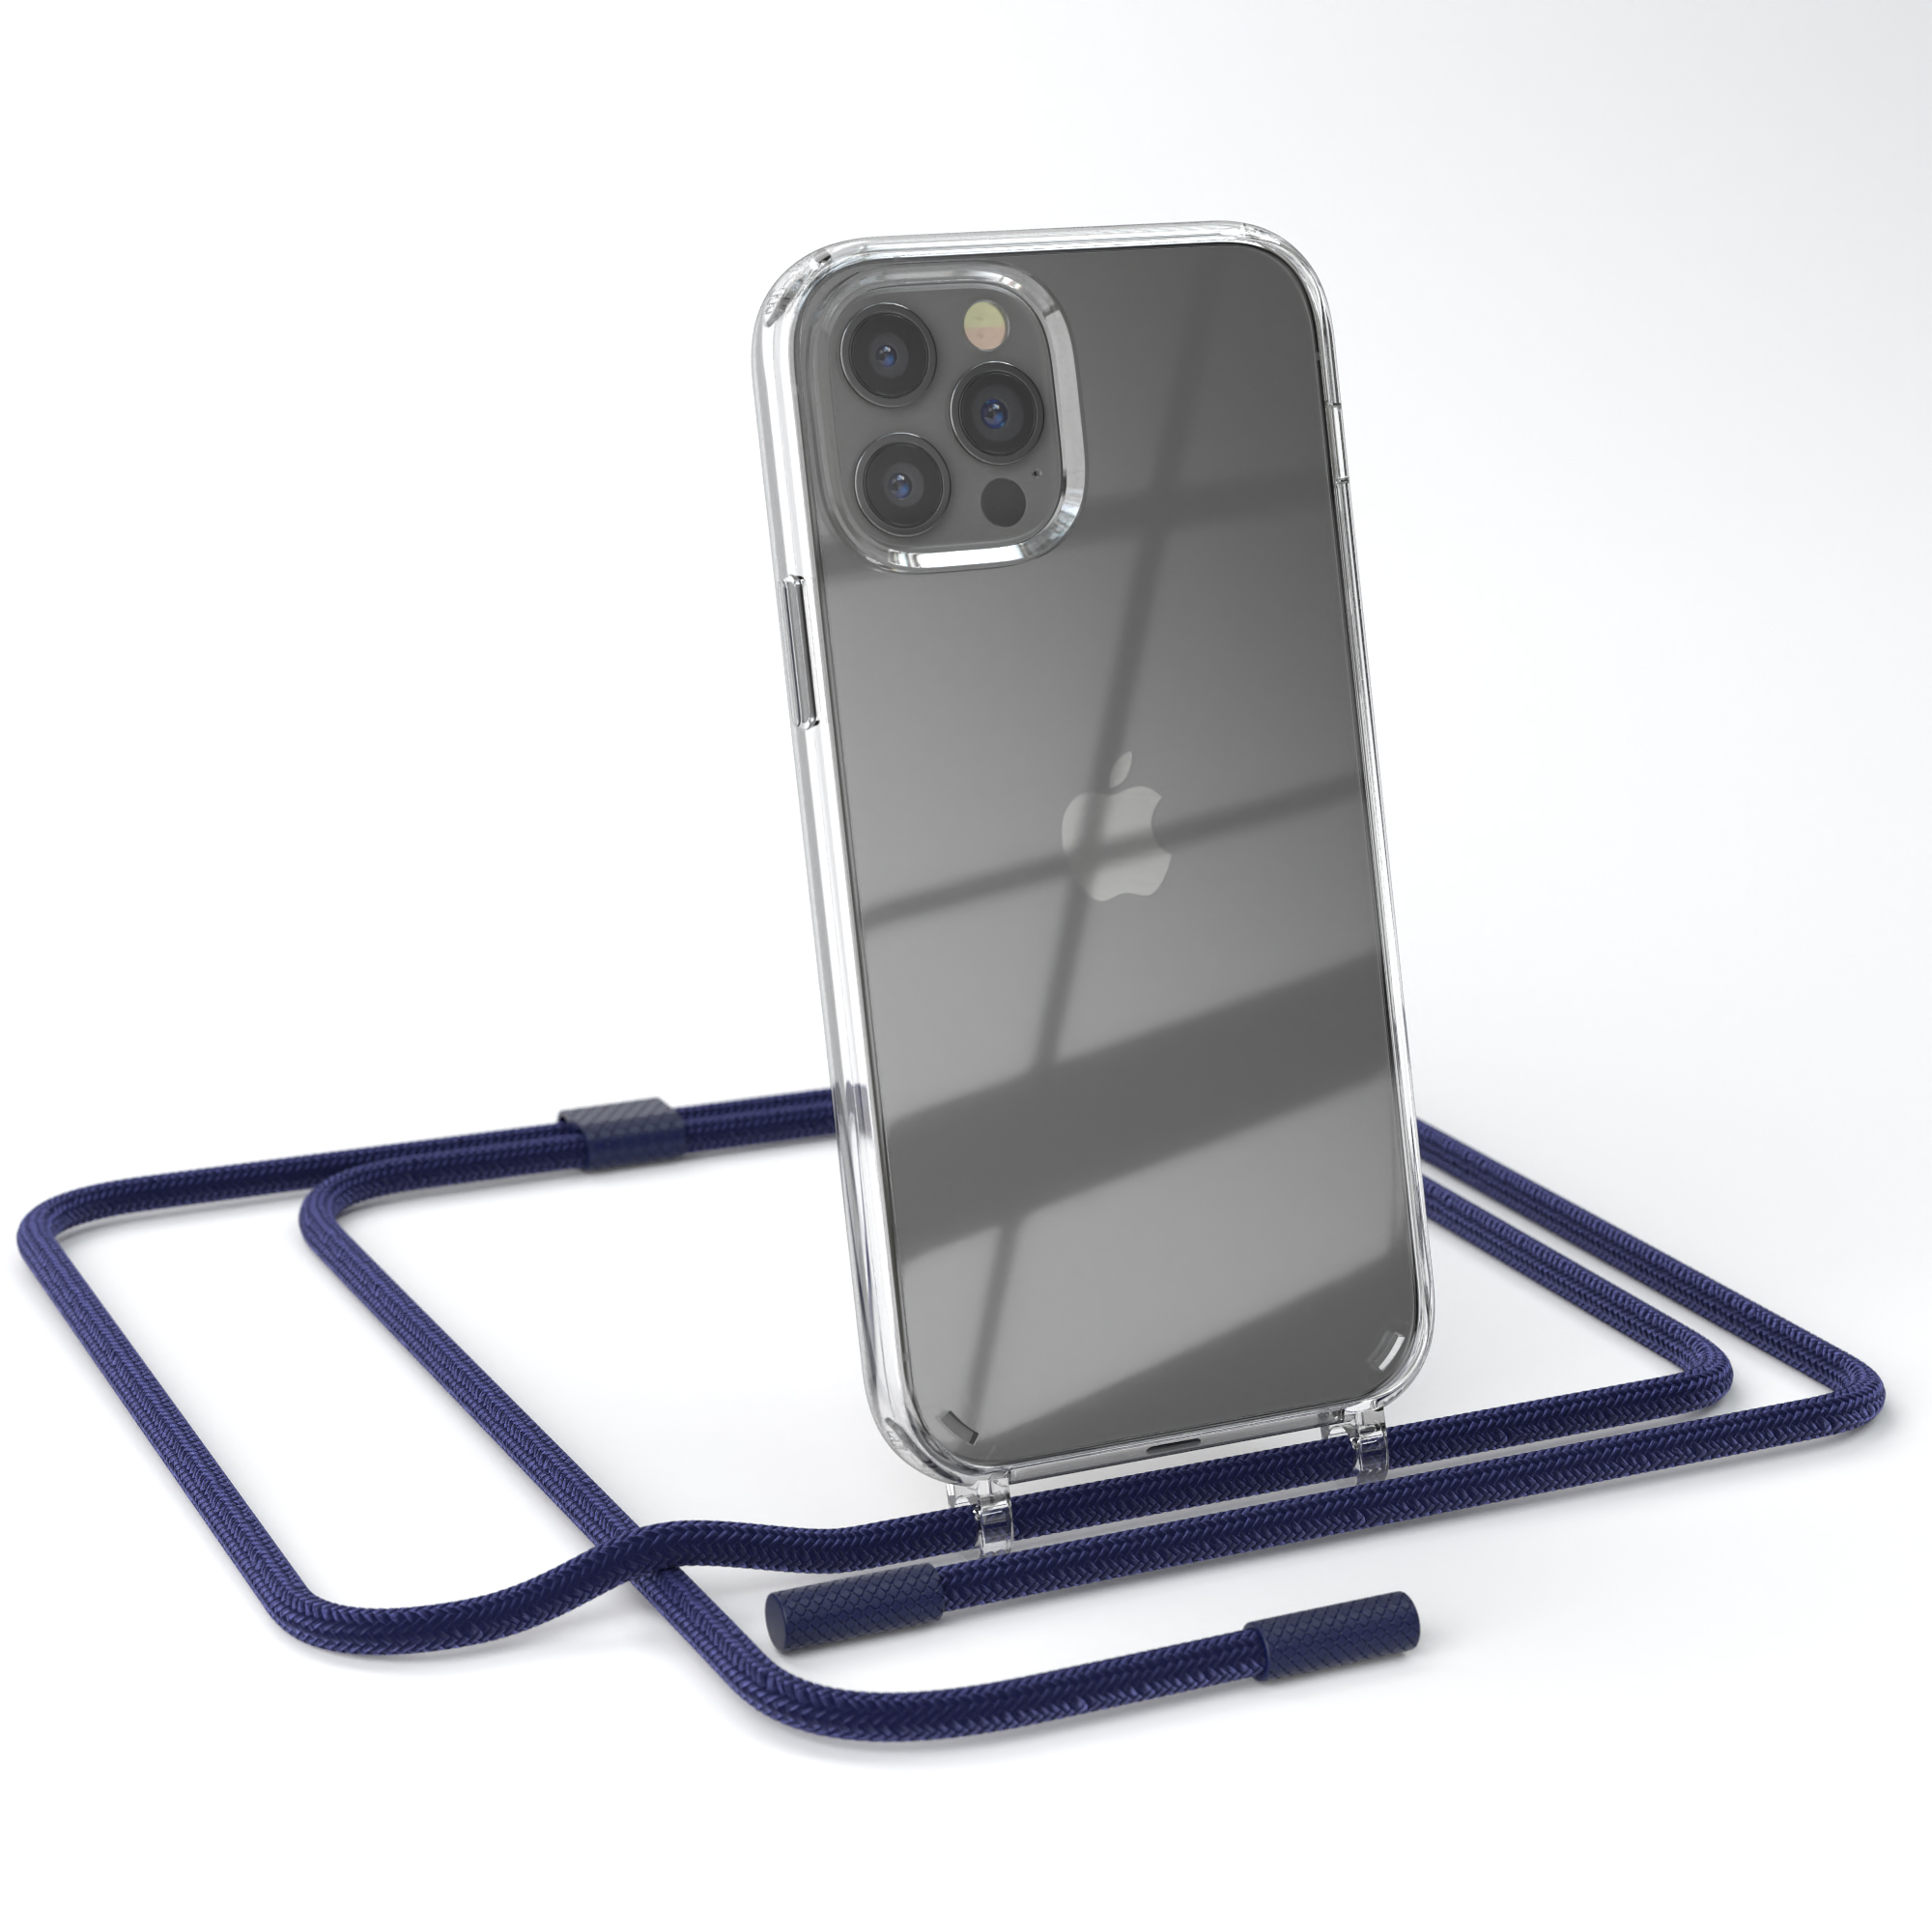 EAZY CASE Transparente Handyhülle unifarbend, / Nachtblau Dunkelblau mit Kette iPhone 12 runder Apple, 12 Umhängetasche, / Pro